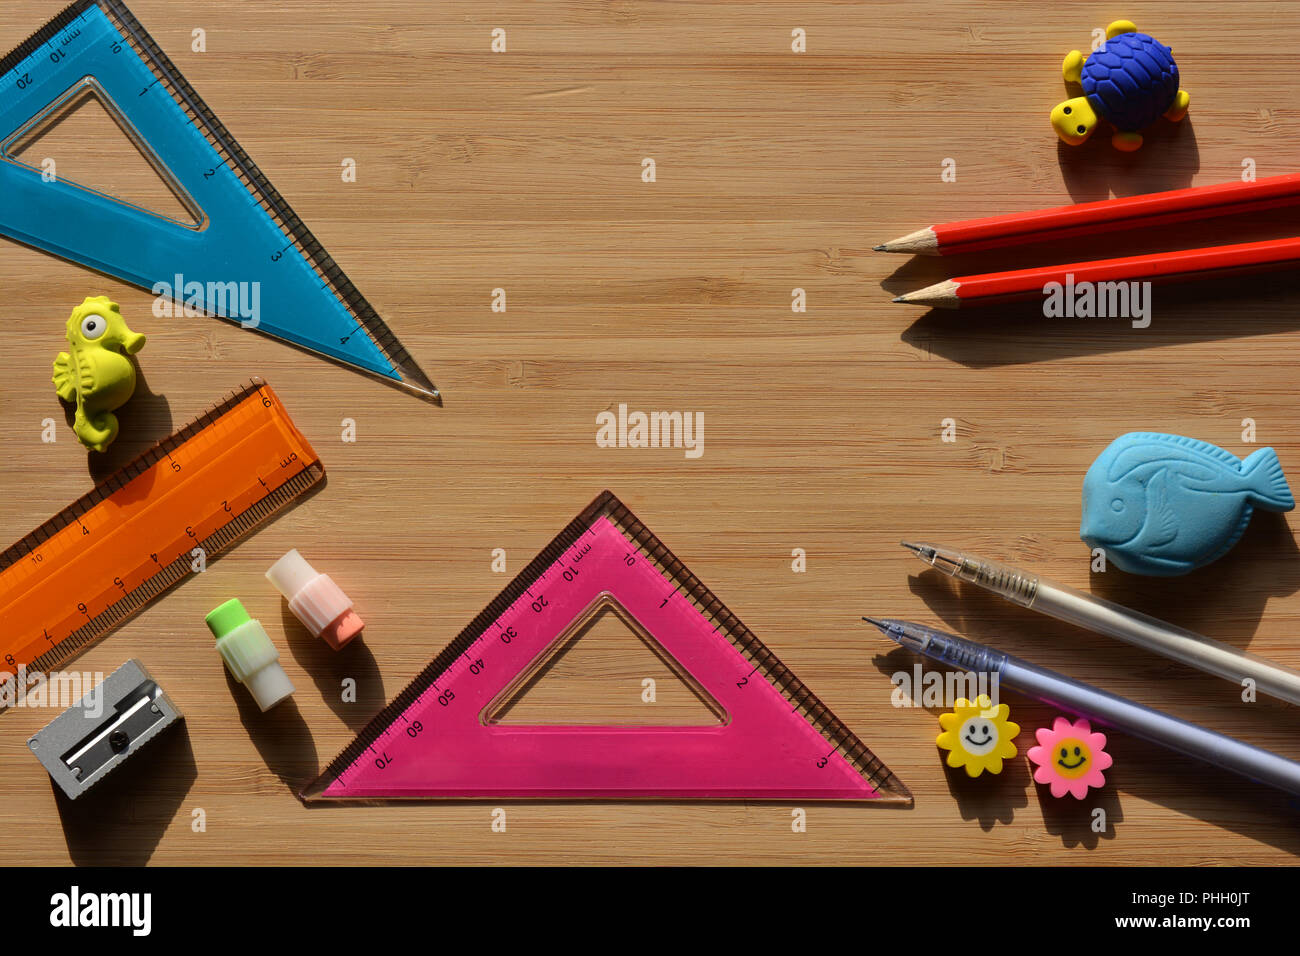 Bleistifte, Radiergummis, Spitzer, Lineal und geodreieck auf einer hölzernen Desktop mit Kopieren, zurück zu Schule Mathematik Essentials. Flatlay Fotografie Stockfoto